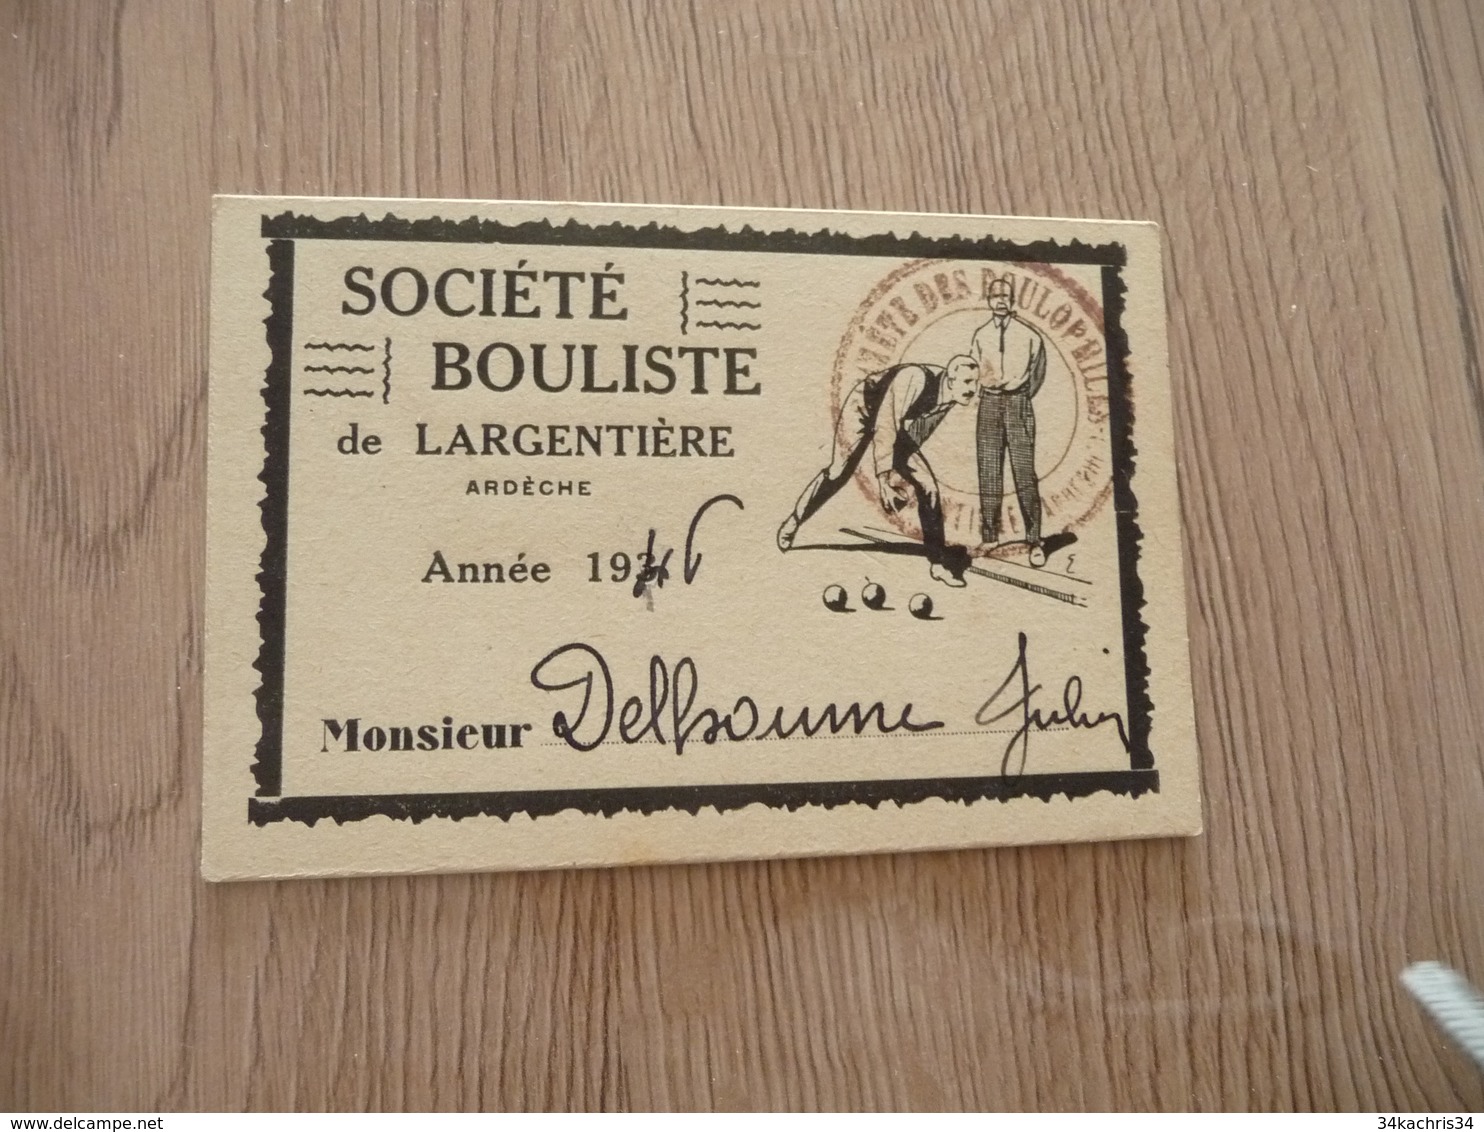 Carte De Membre Pétanque Boules Société Boulistique De Largentière Ardèche 1946 - Boule/Pétanque